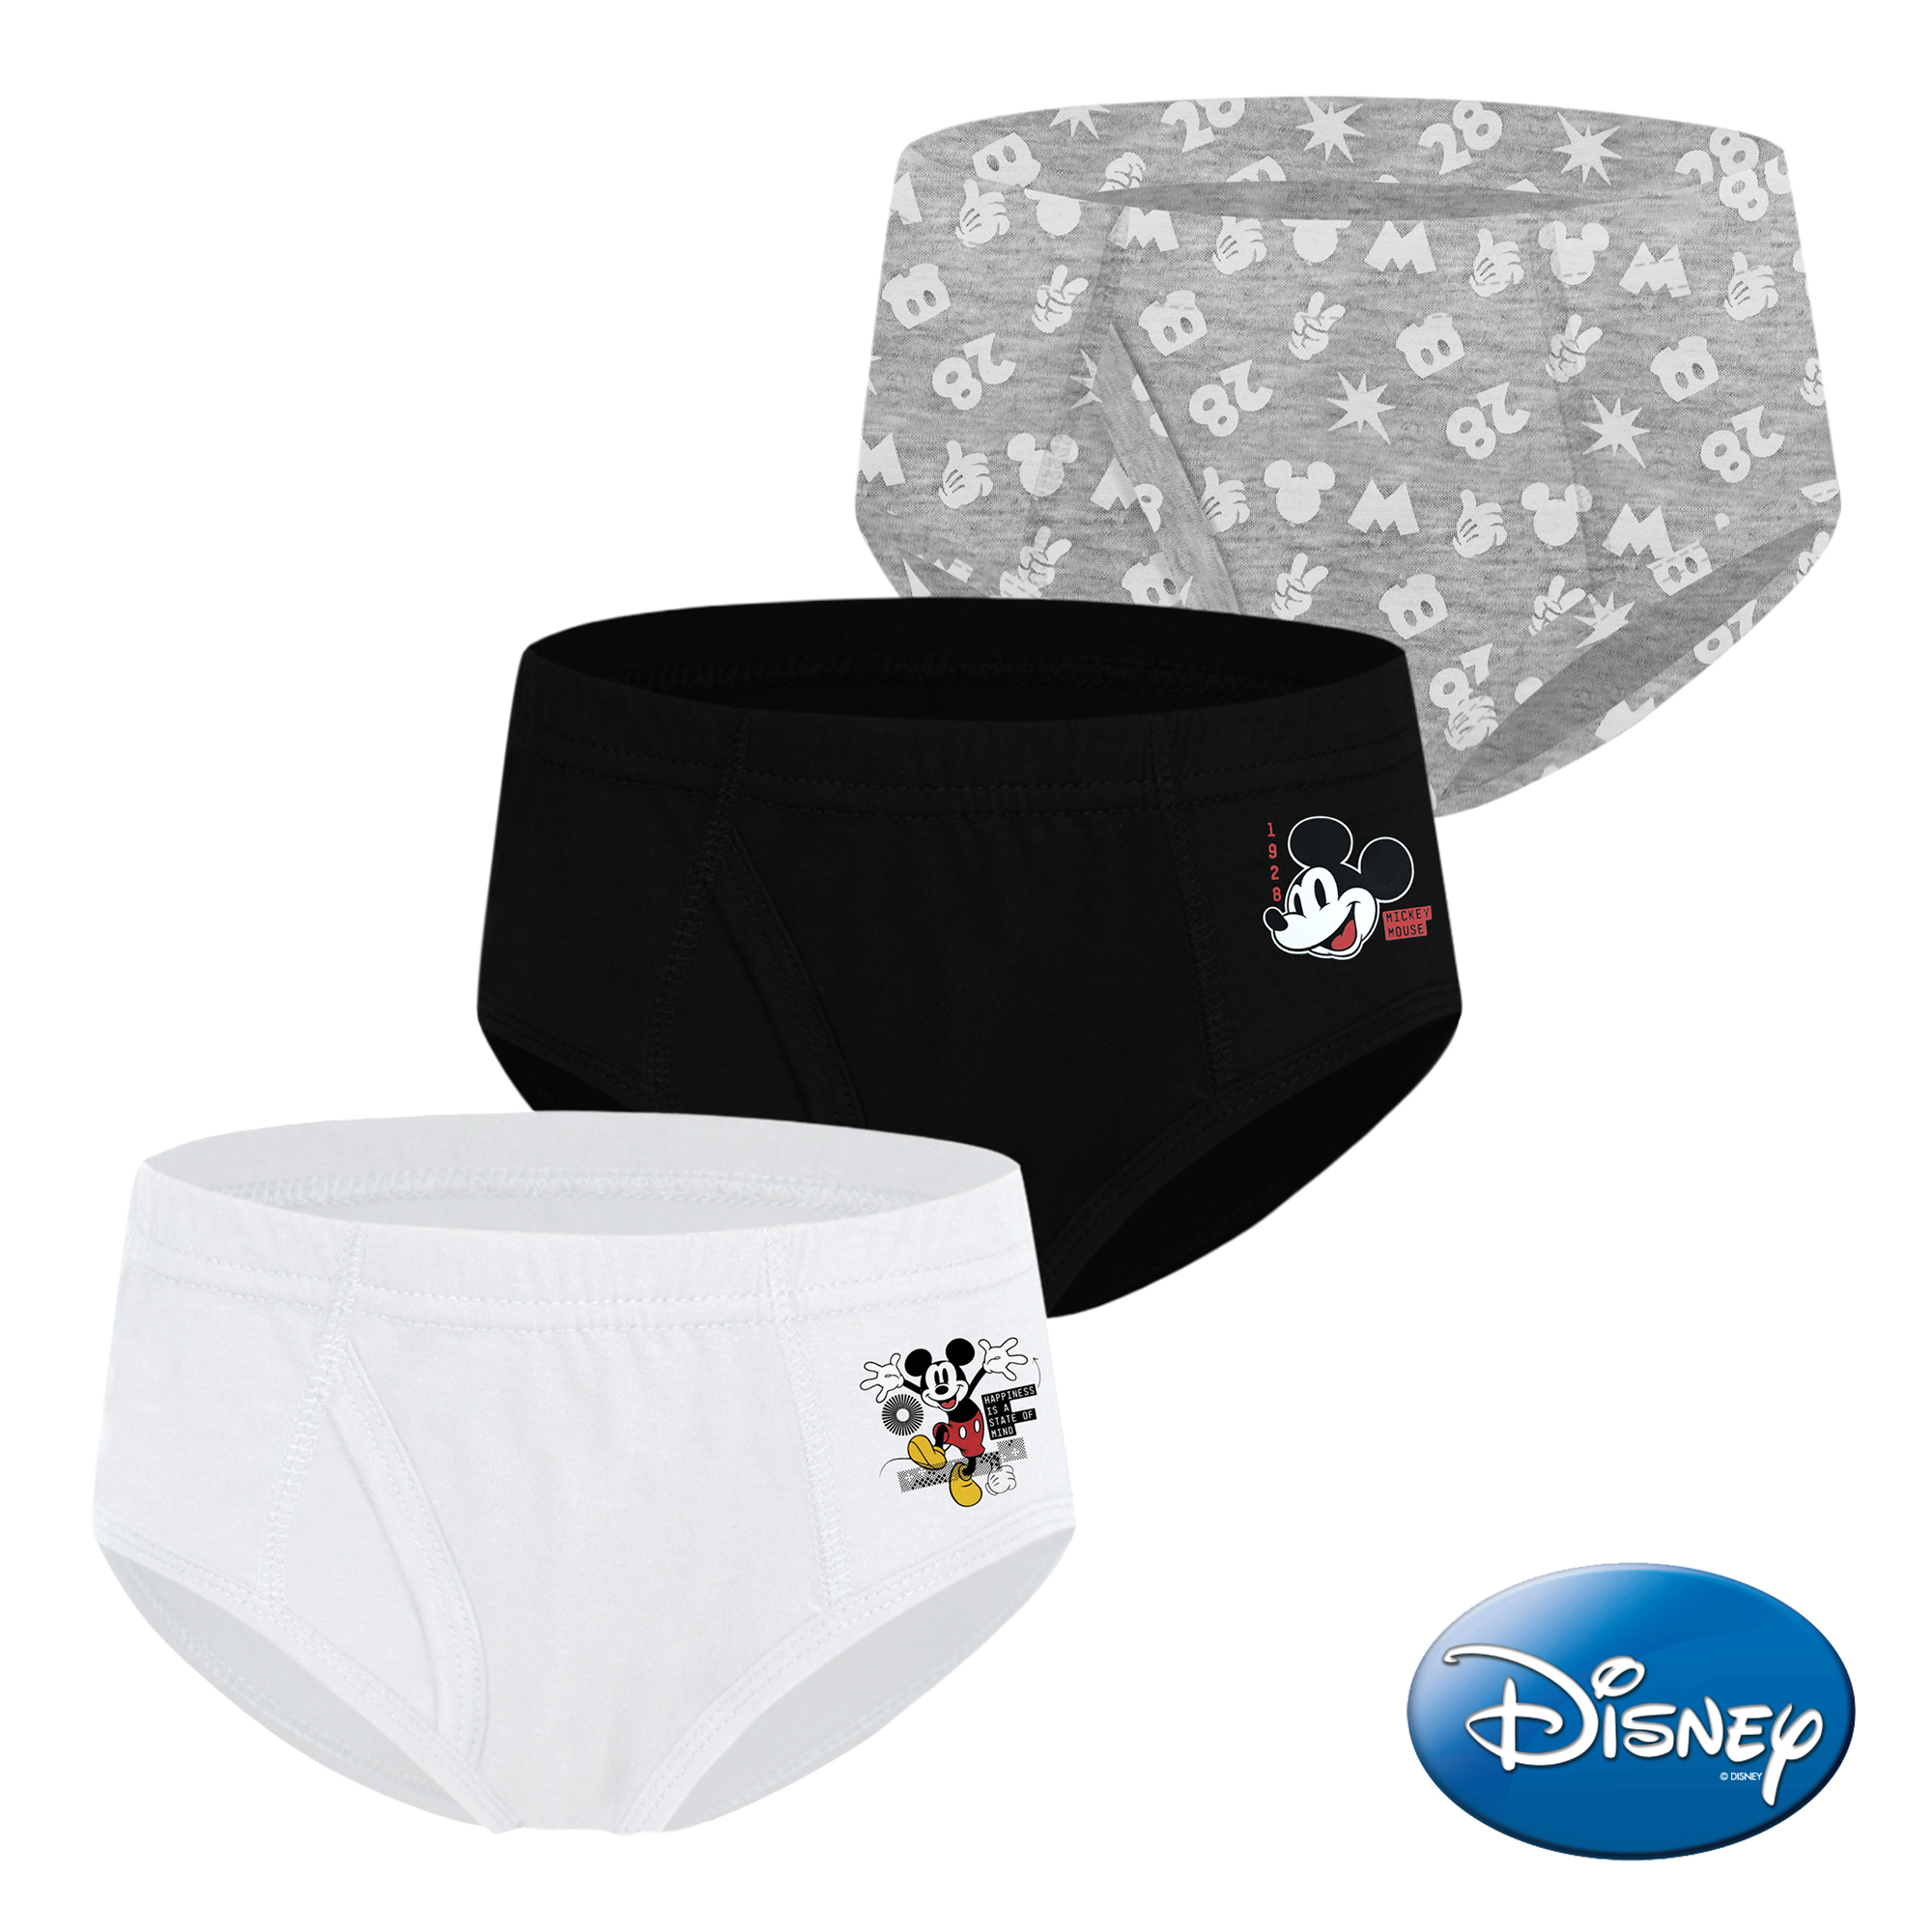 Disney Box Of 3 Briefs - Underwear 